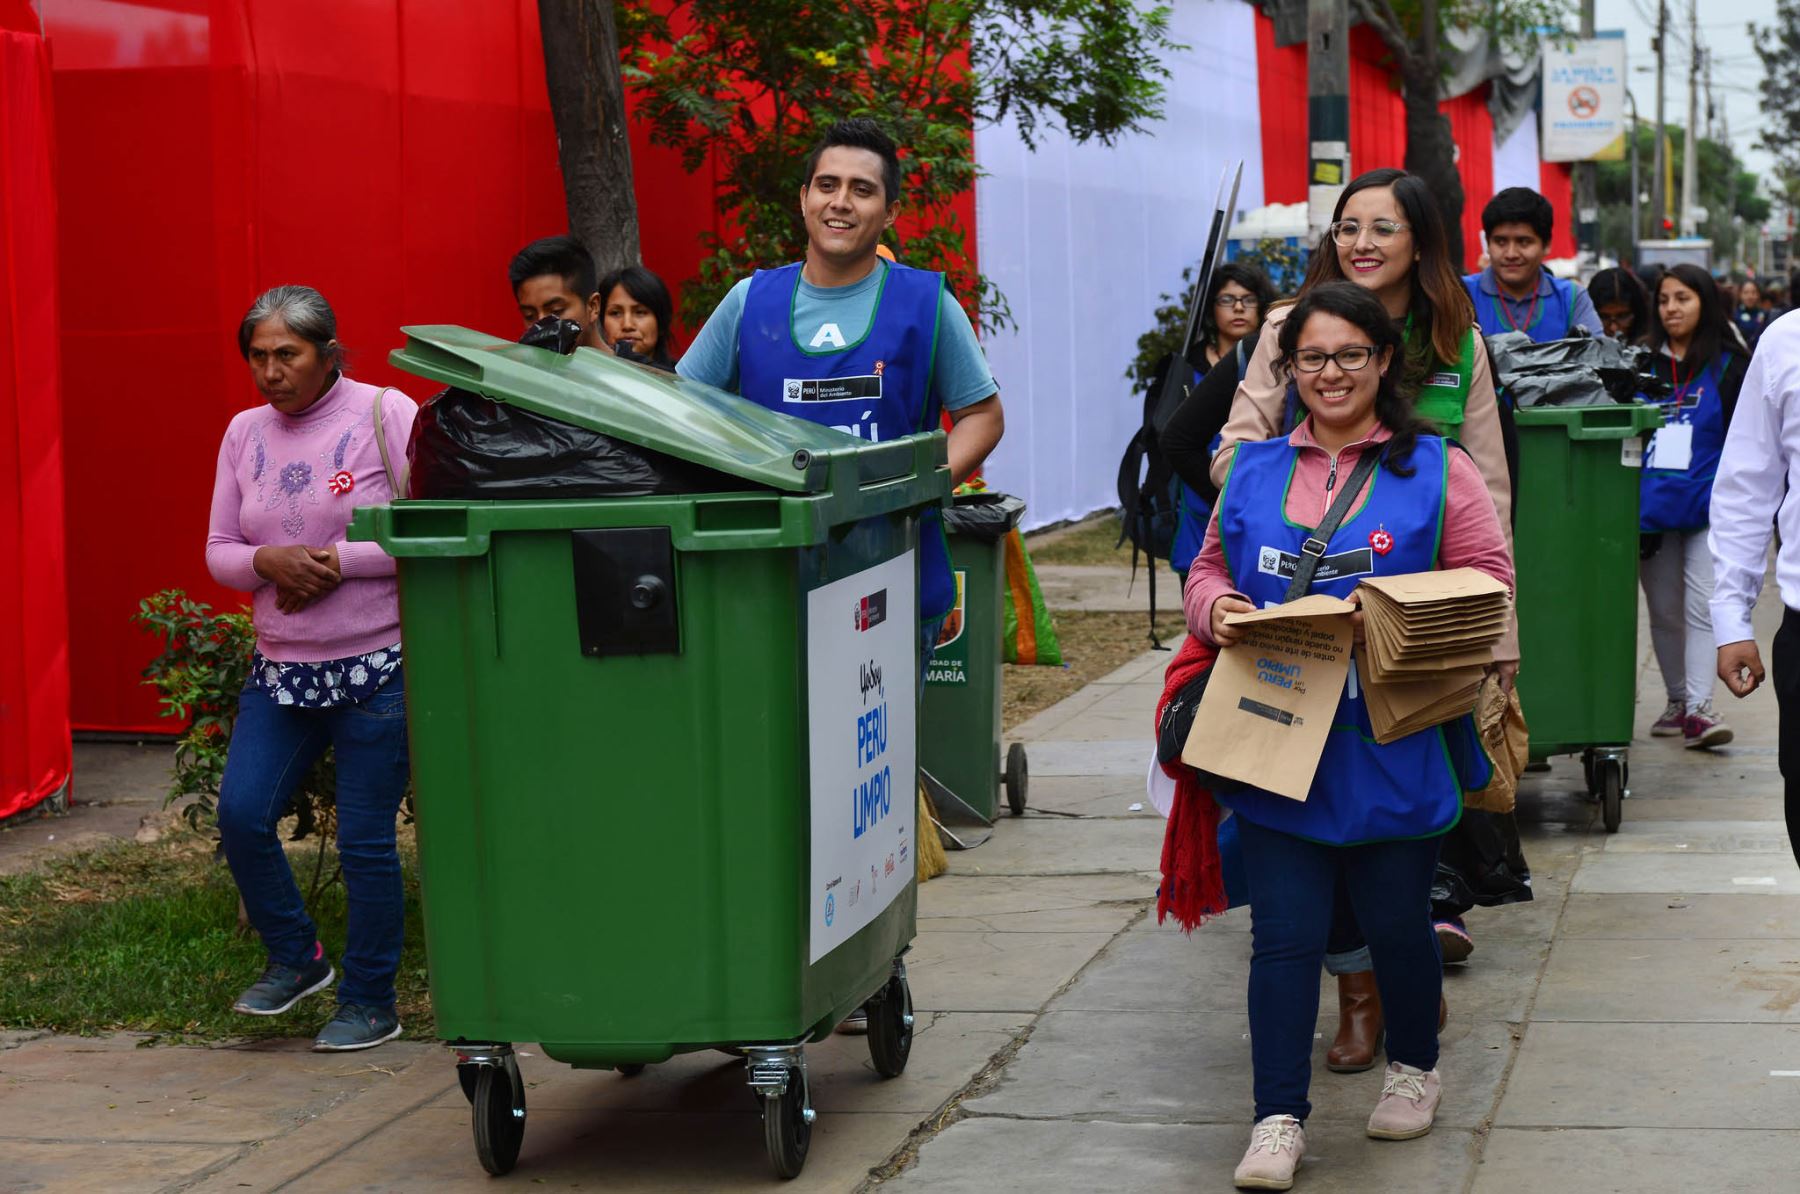 Día Mundial del Reciclaje: entidades públicas apuntan a ser modelos de ecoeficiencia.